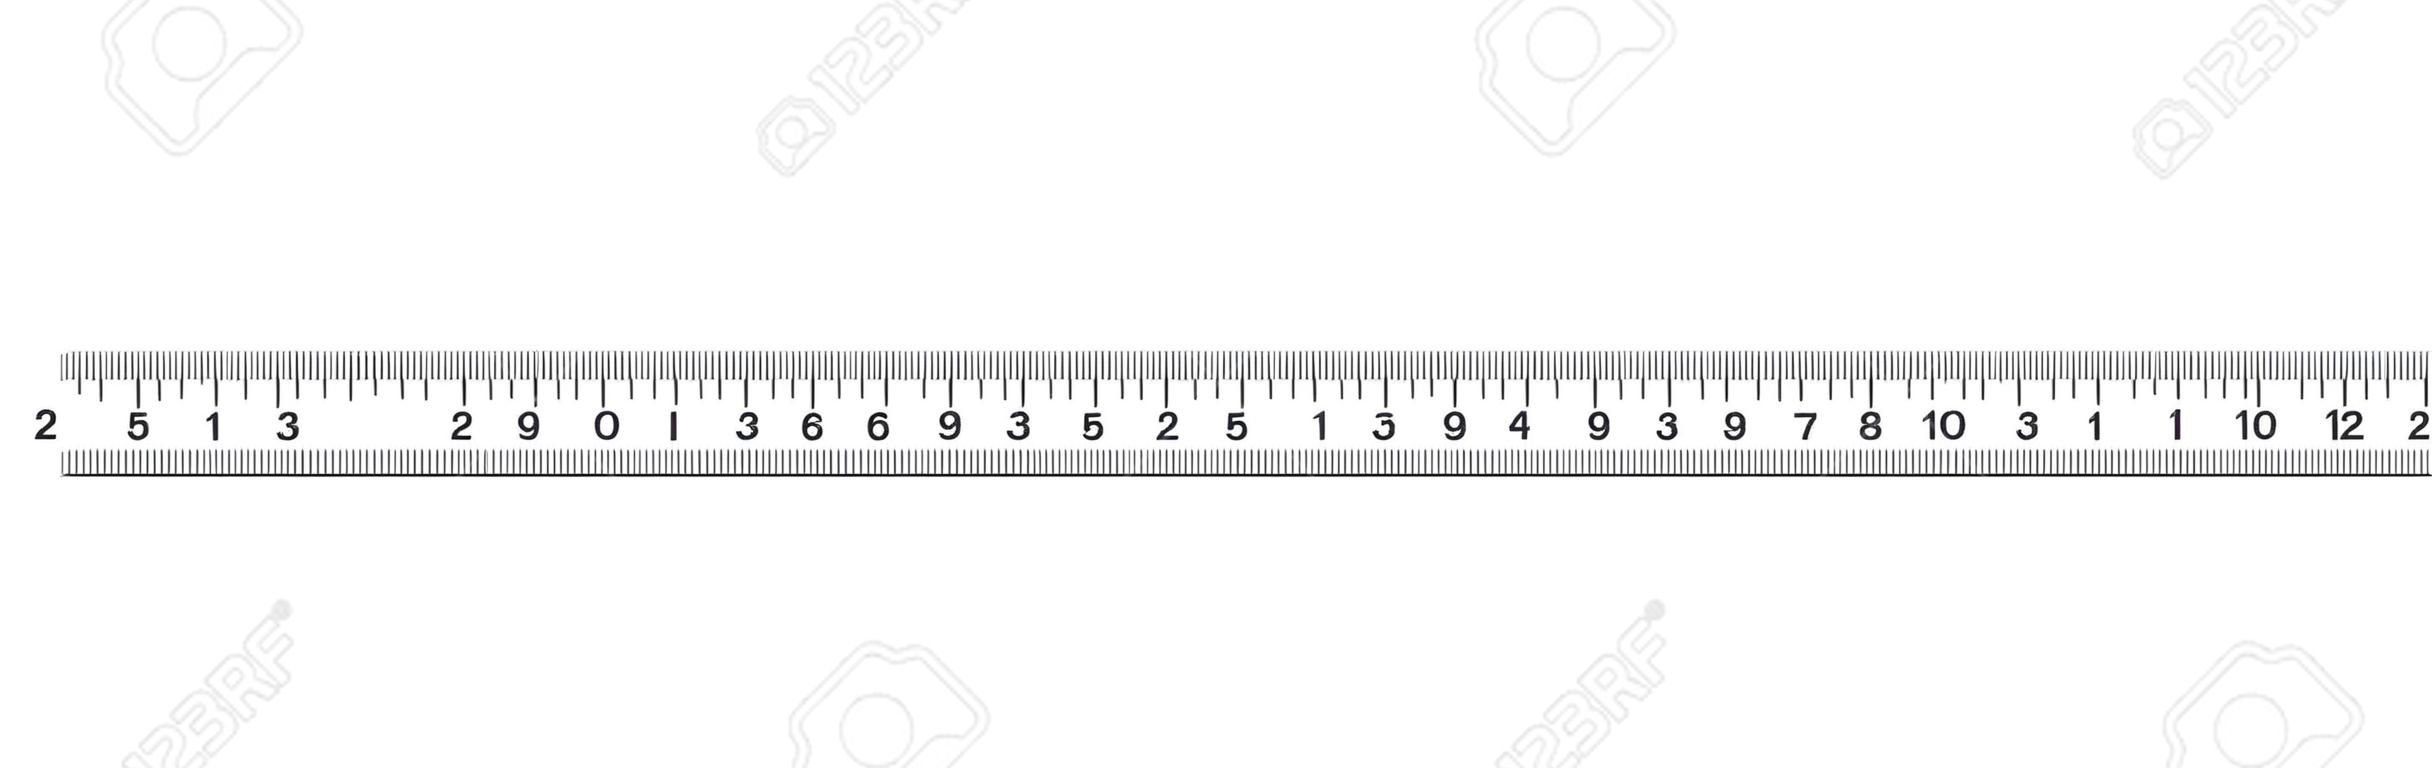 눈금자 20cm. 측정 도구. 눈금자 졸업. 눈금자 그리드 20 및 1cm. 크기 표시 단위. 미터법 센티미터 크기 표시기. 벡터 EPS10